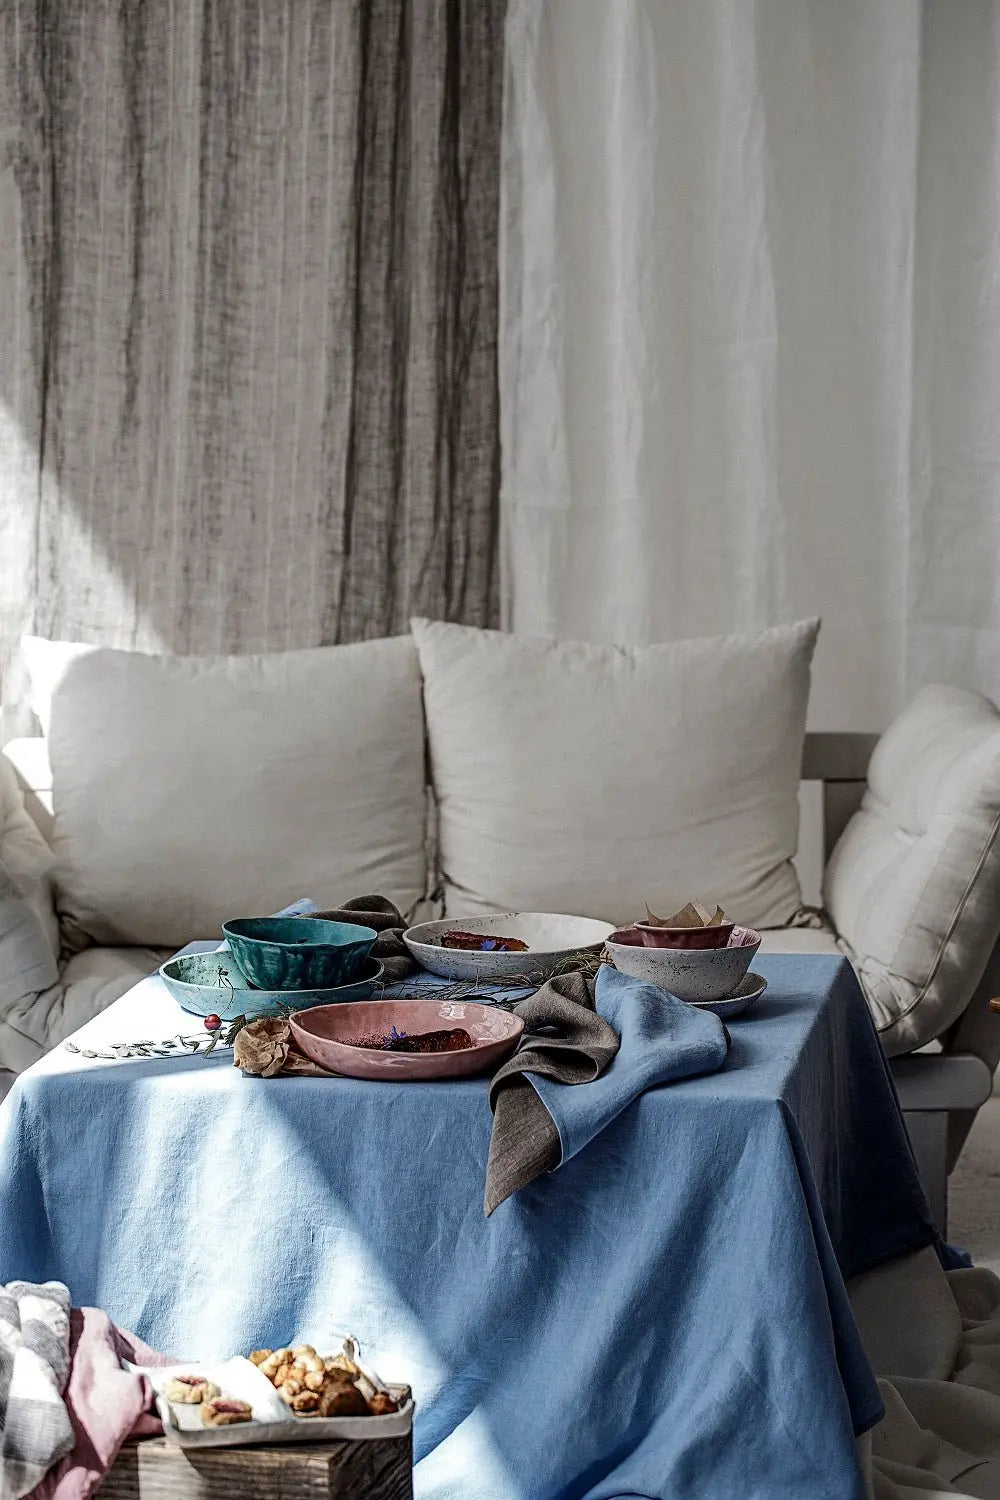 Sheer Natural Linen Curtains - Epic Linen luxury linen